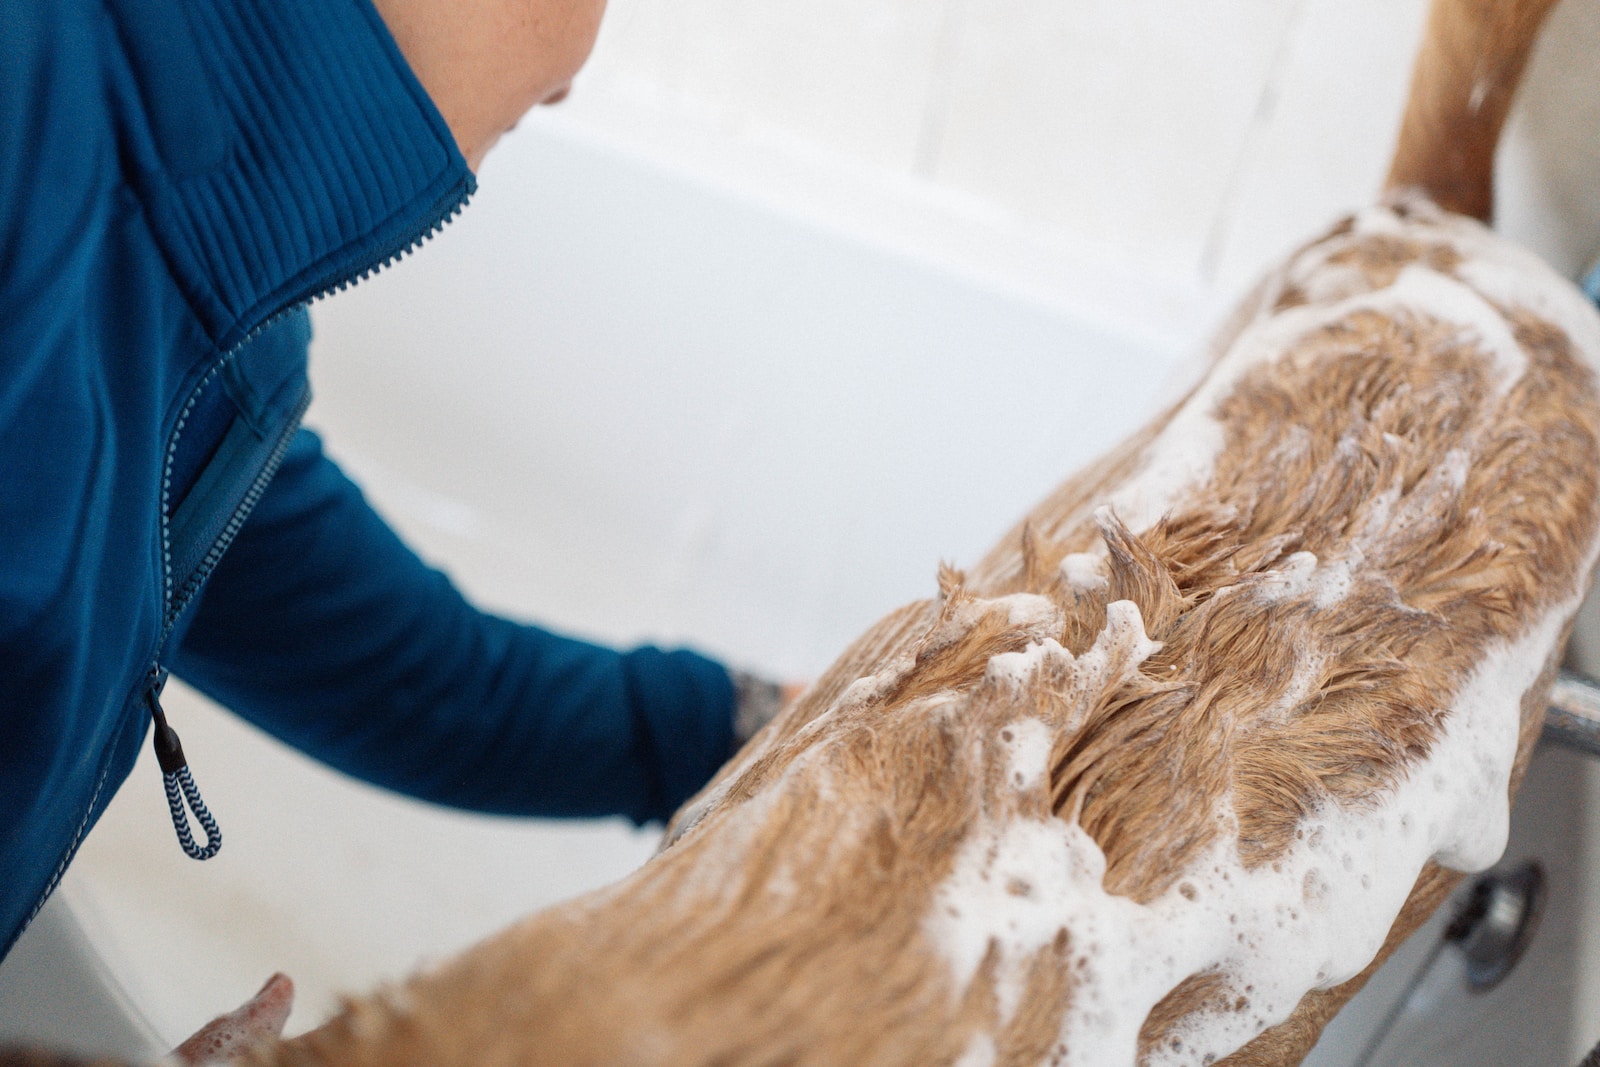 a person washing a dog in a bath tub